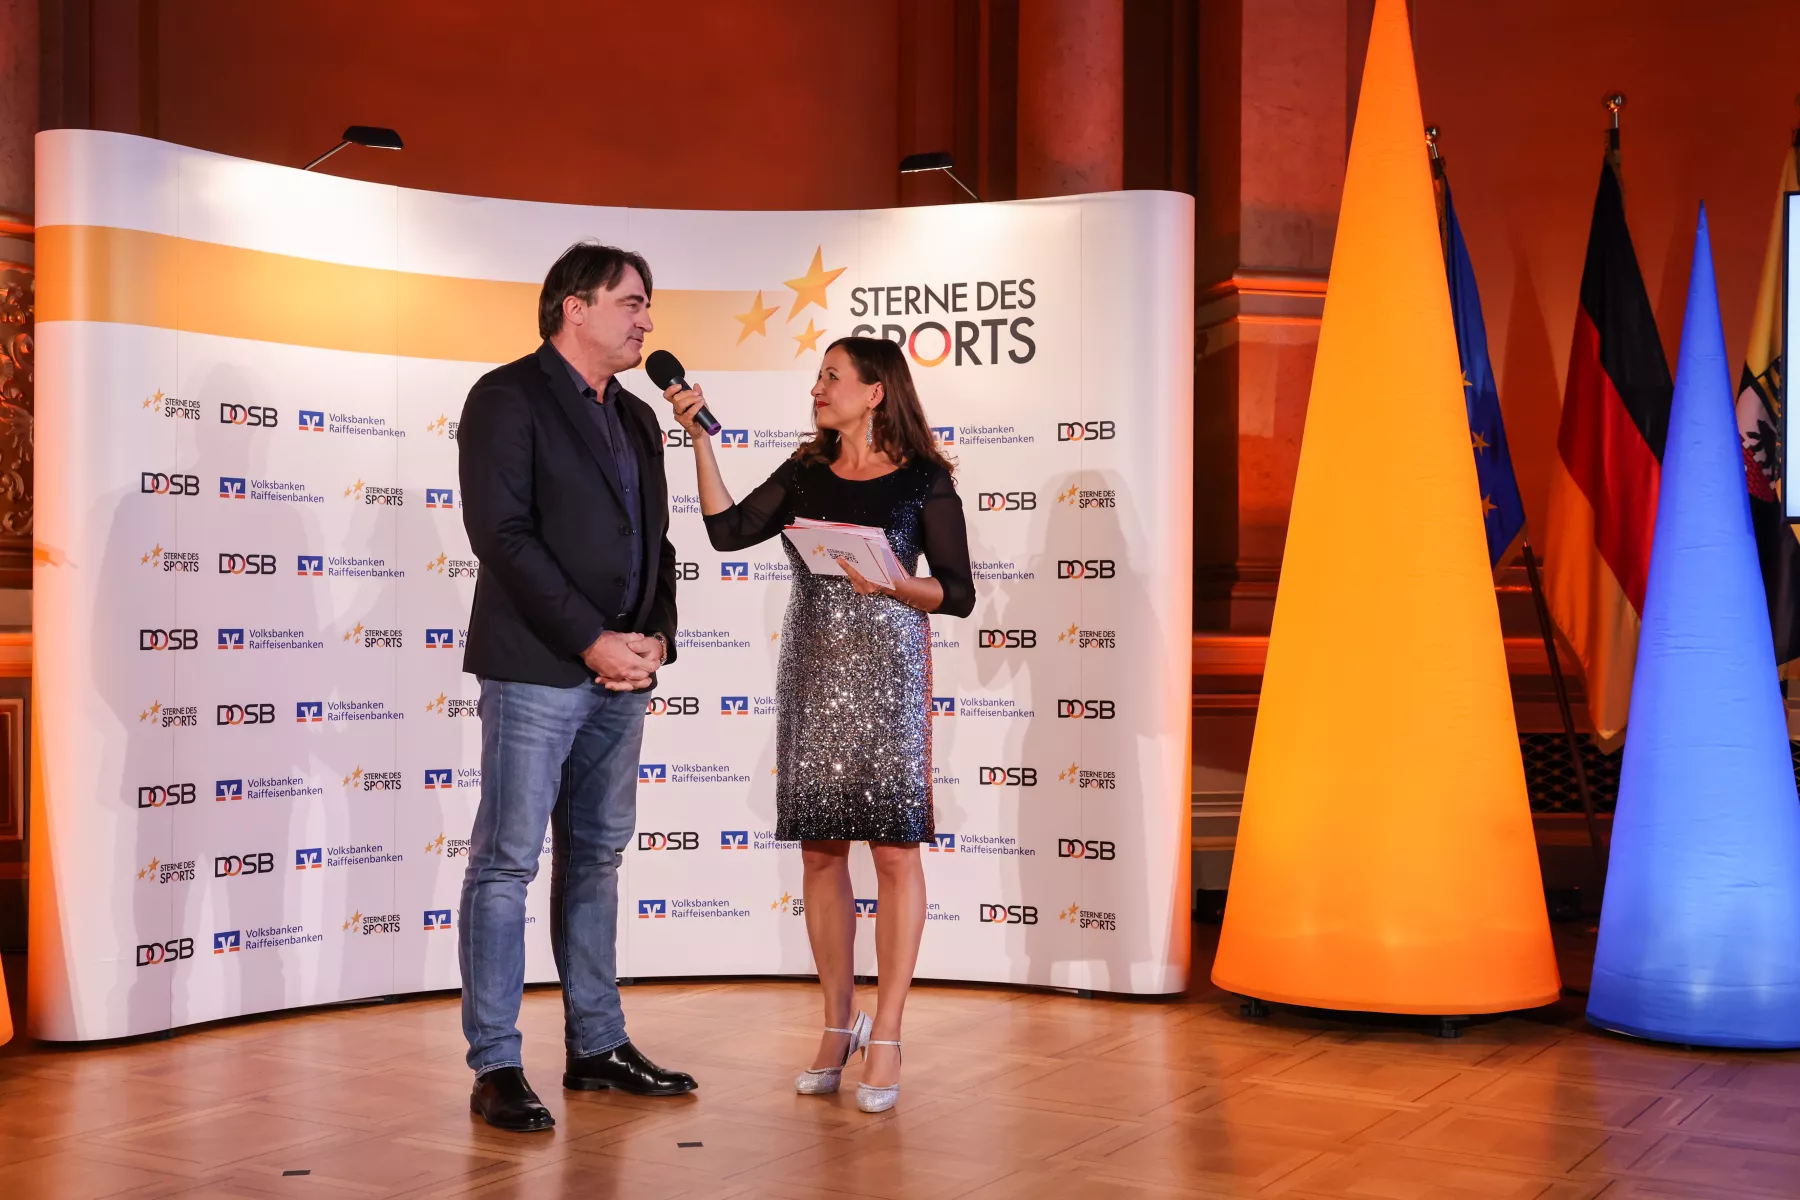 Sterne des Sports - Preisverleihung in 2022 mit Freddy Holzapfel als Moderatorin